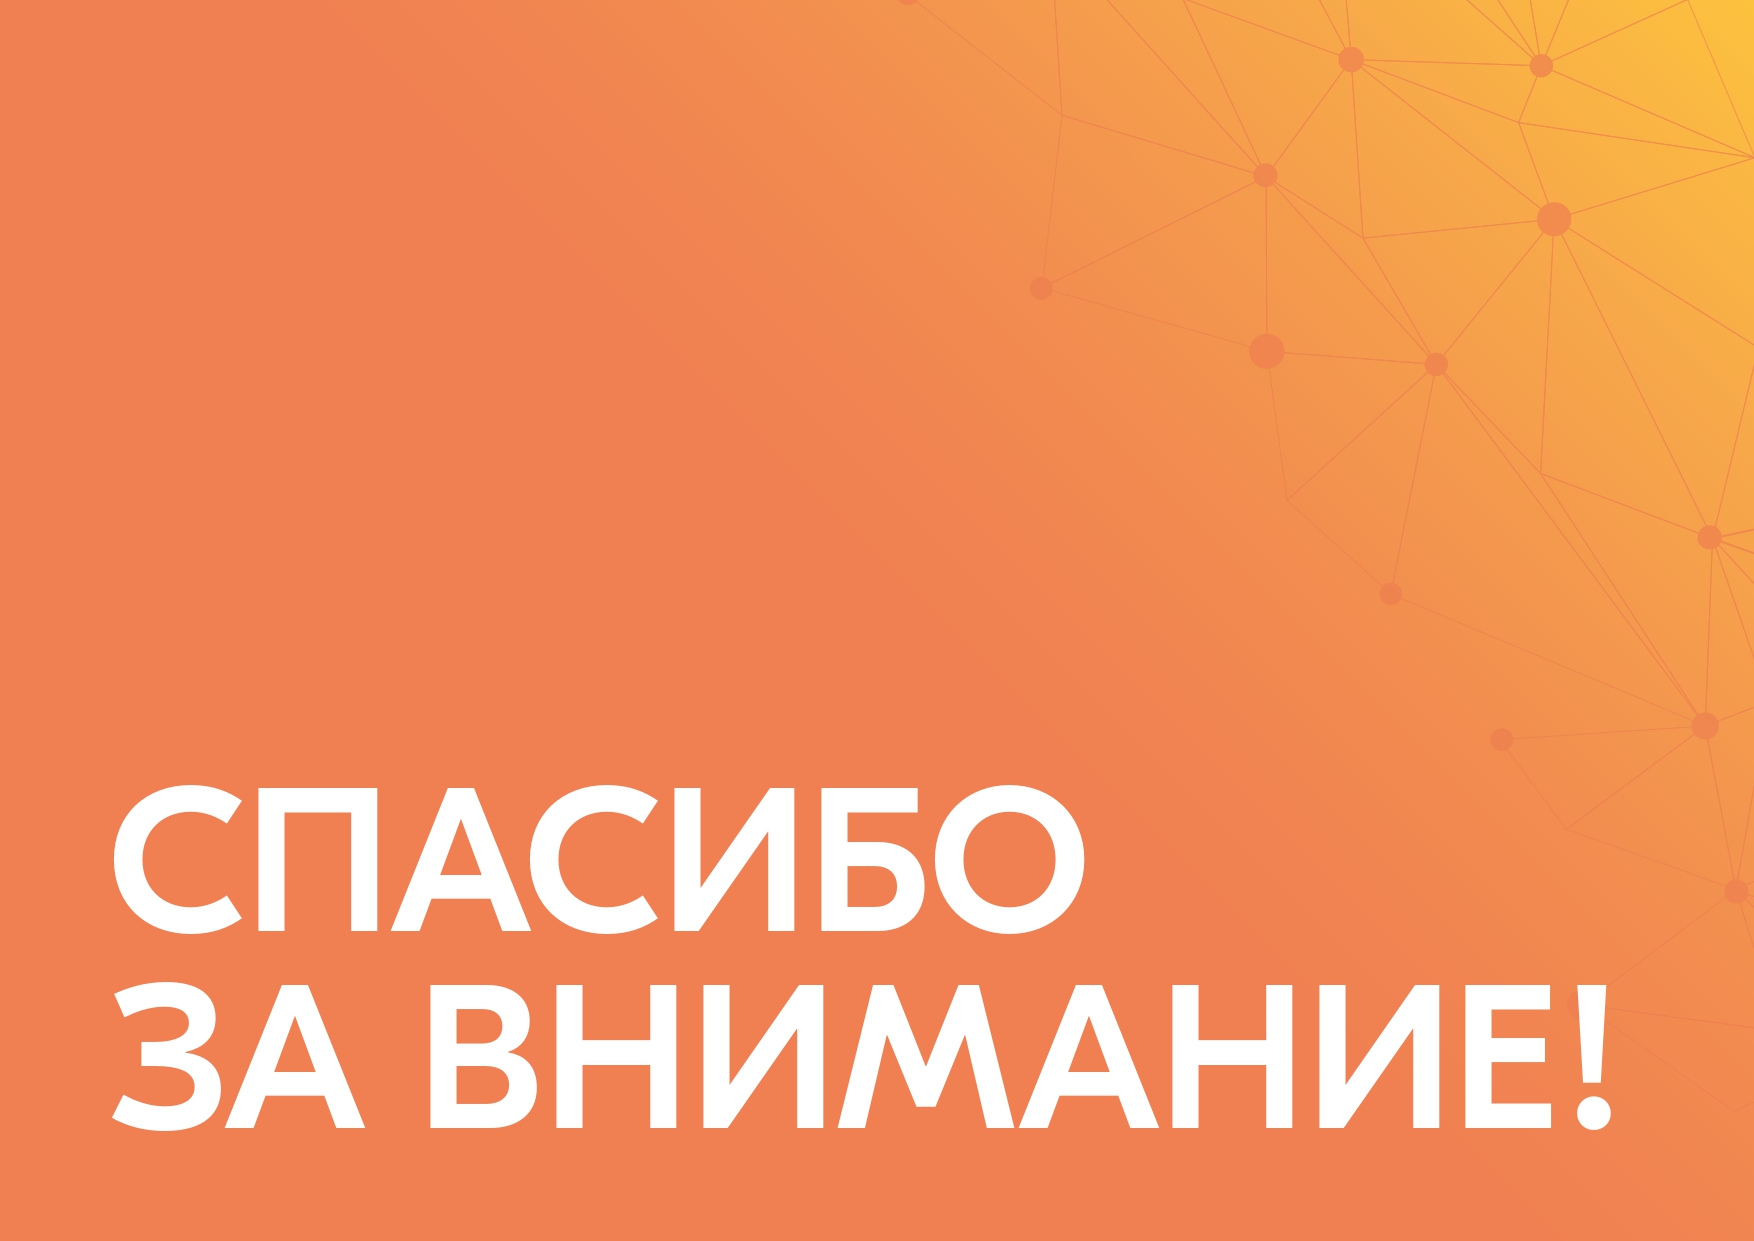 ФОТО к новости: Новосибирская область присоединилась к акции взаимопомощи #МЫВМЕСТЕ